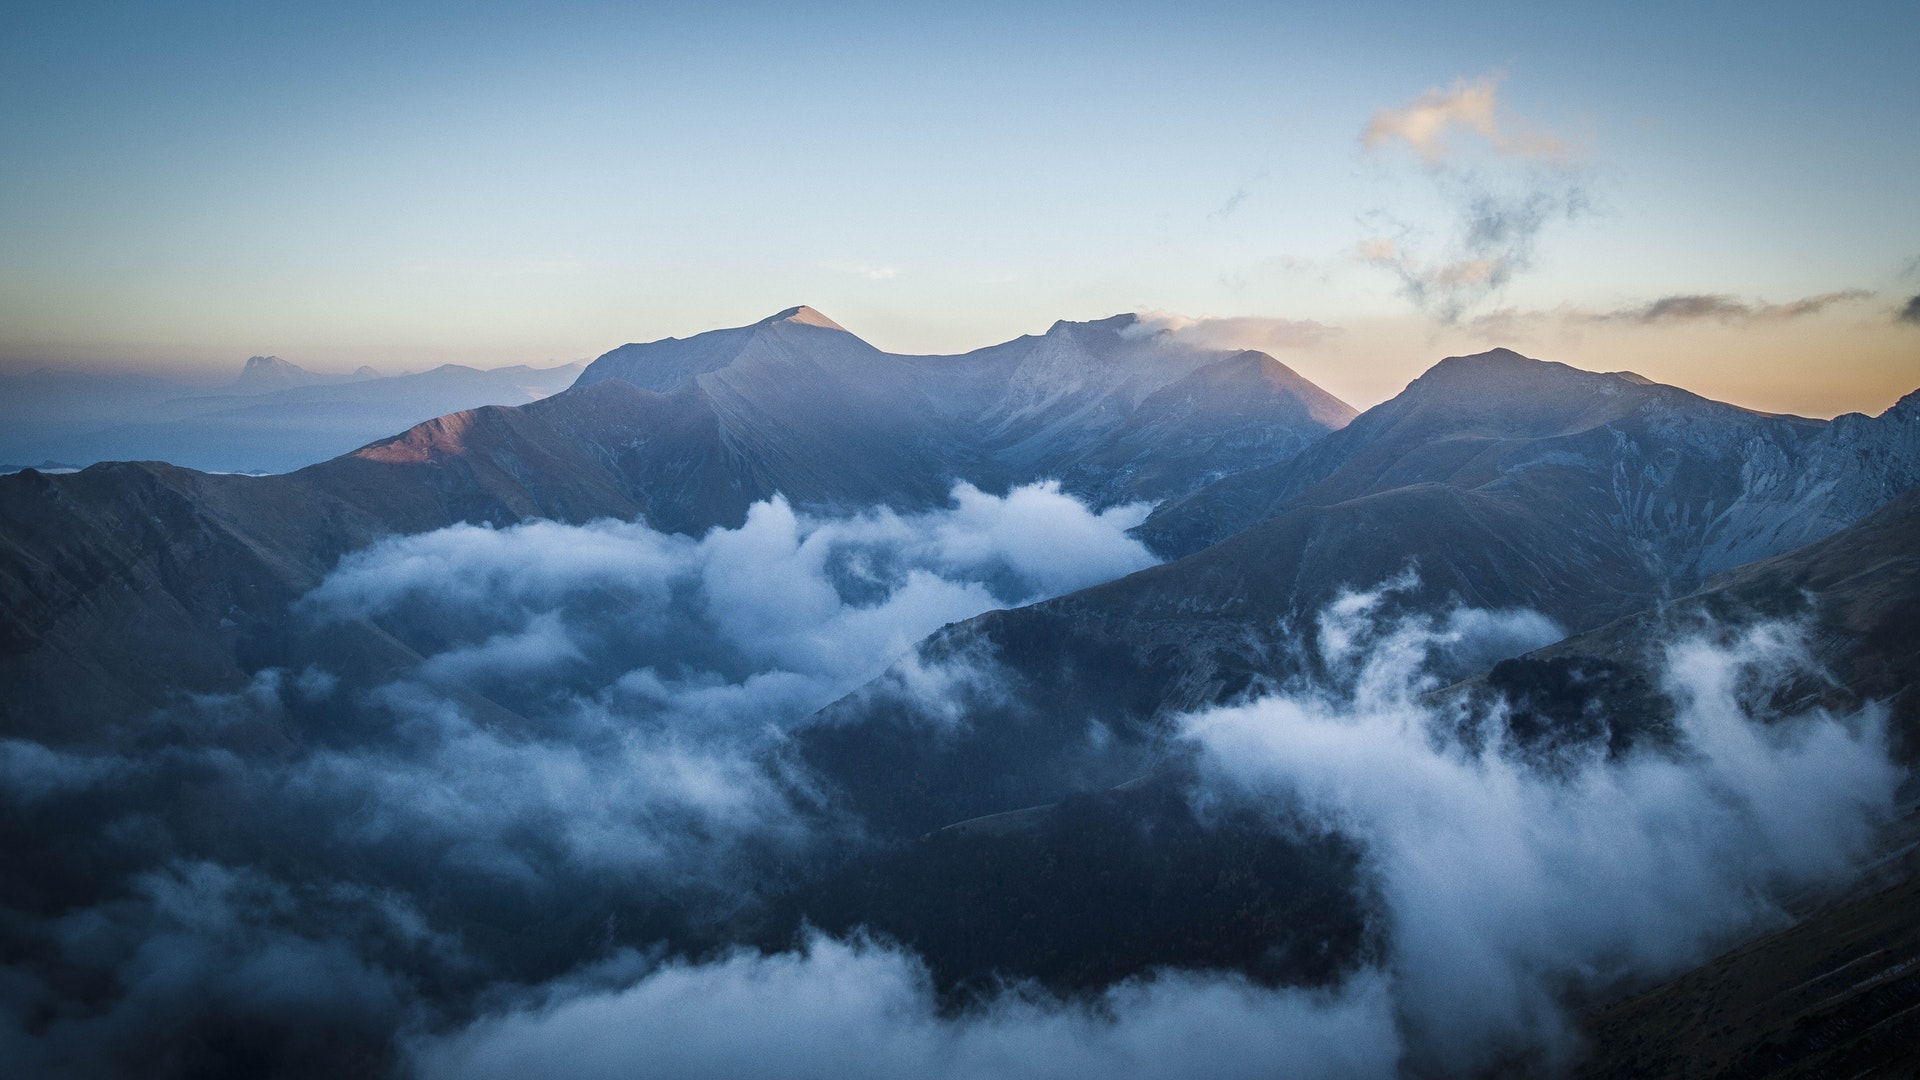 山峰图片素材 壮丽的山峰美景摄影图片